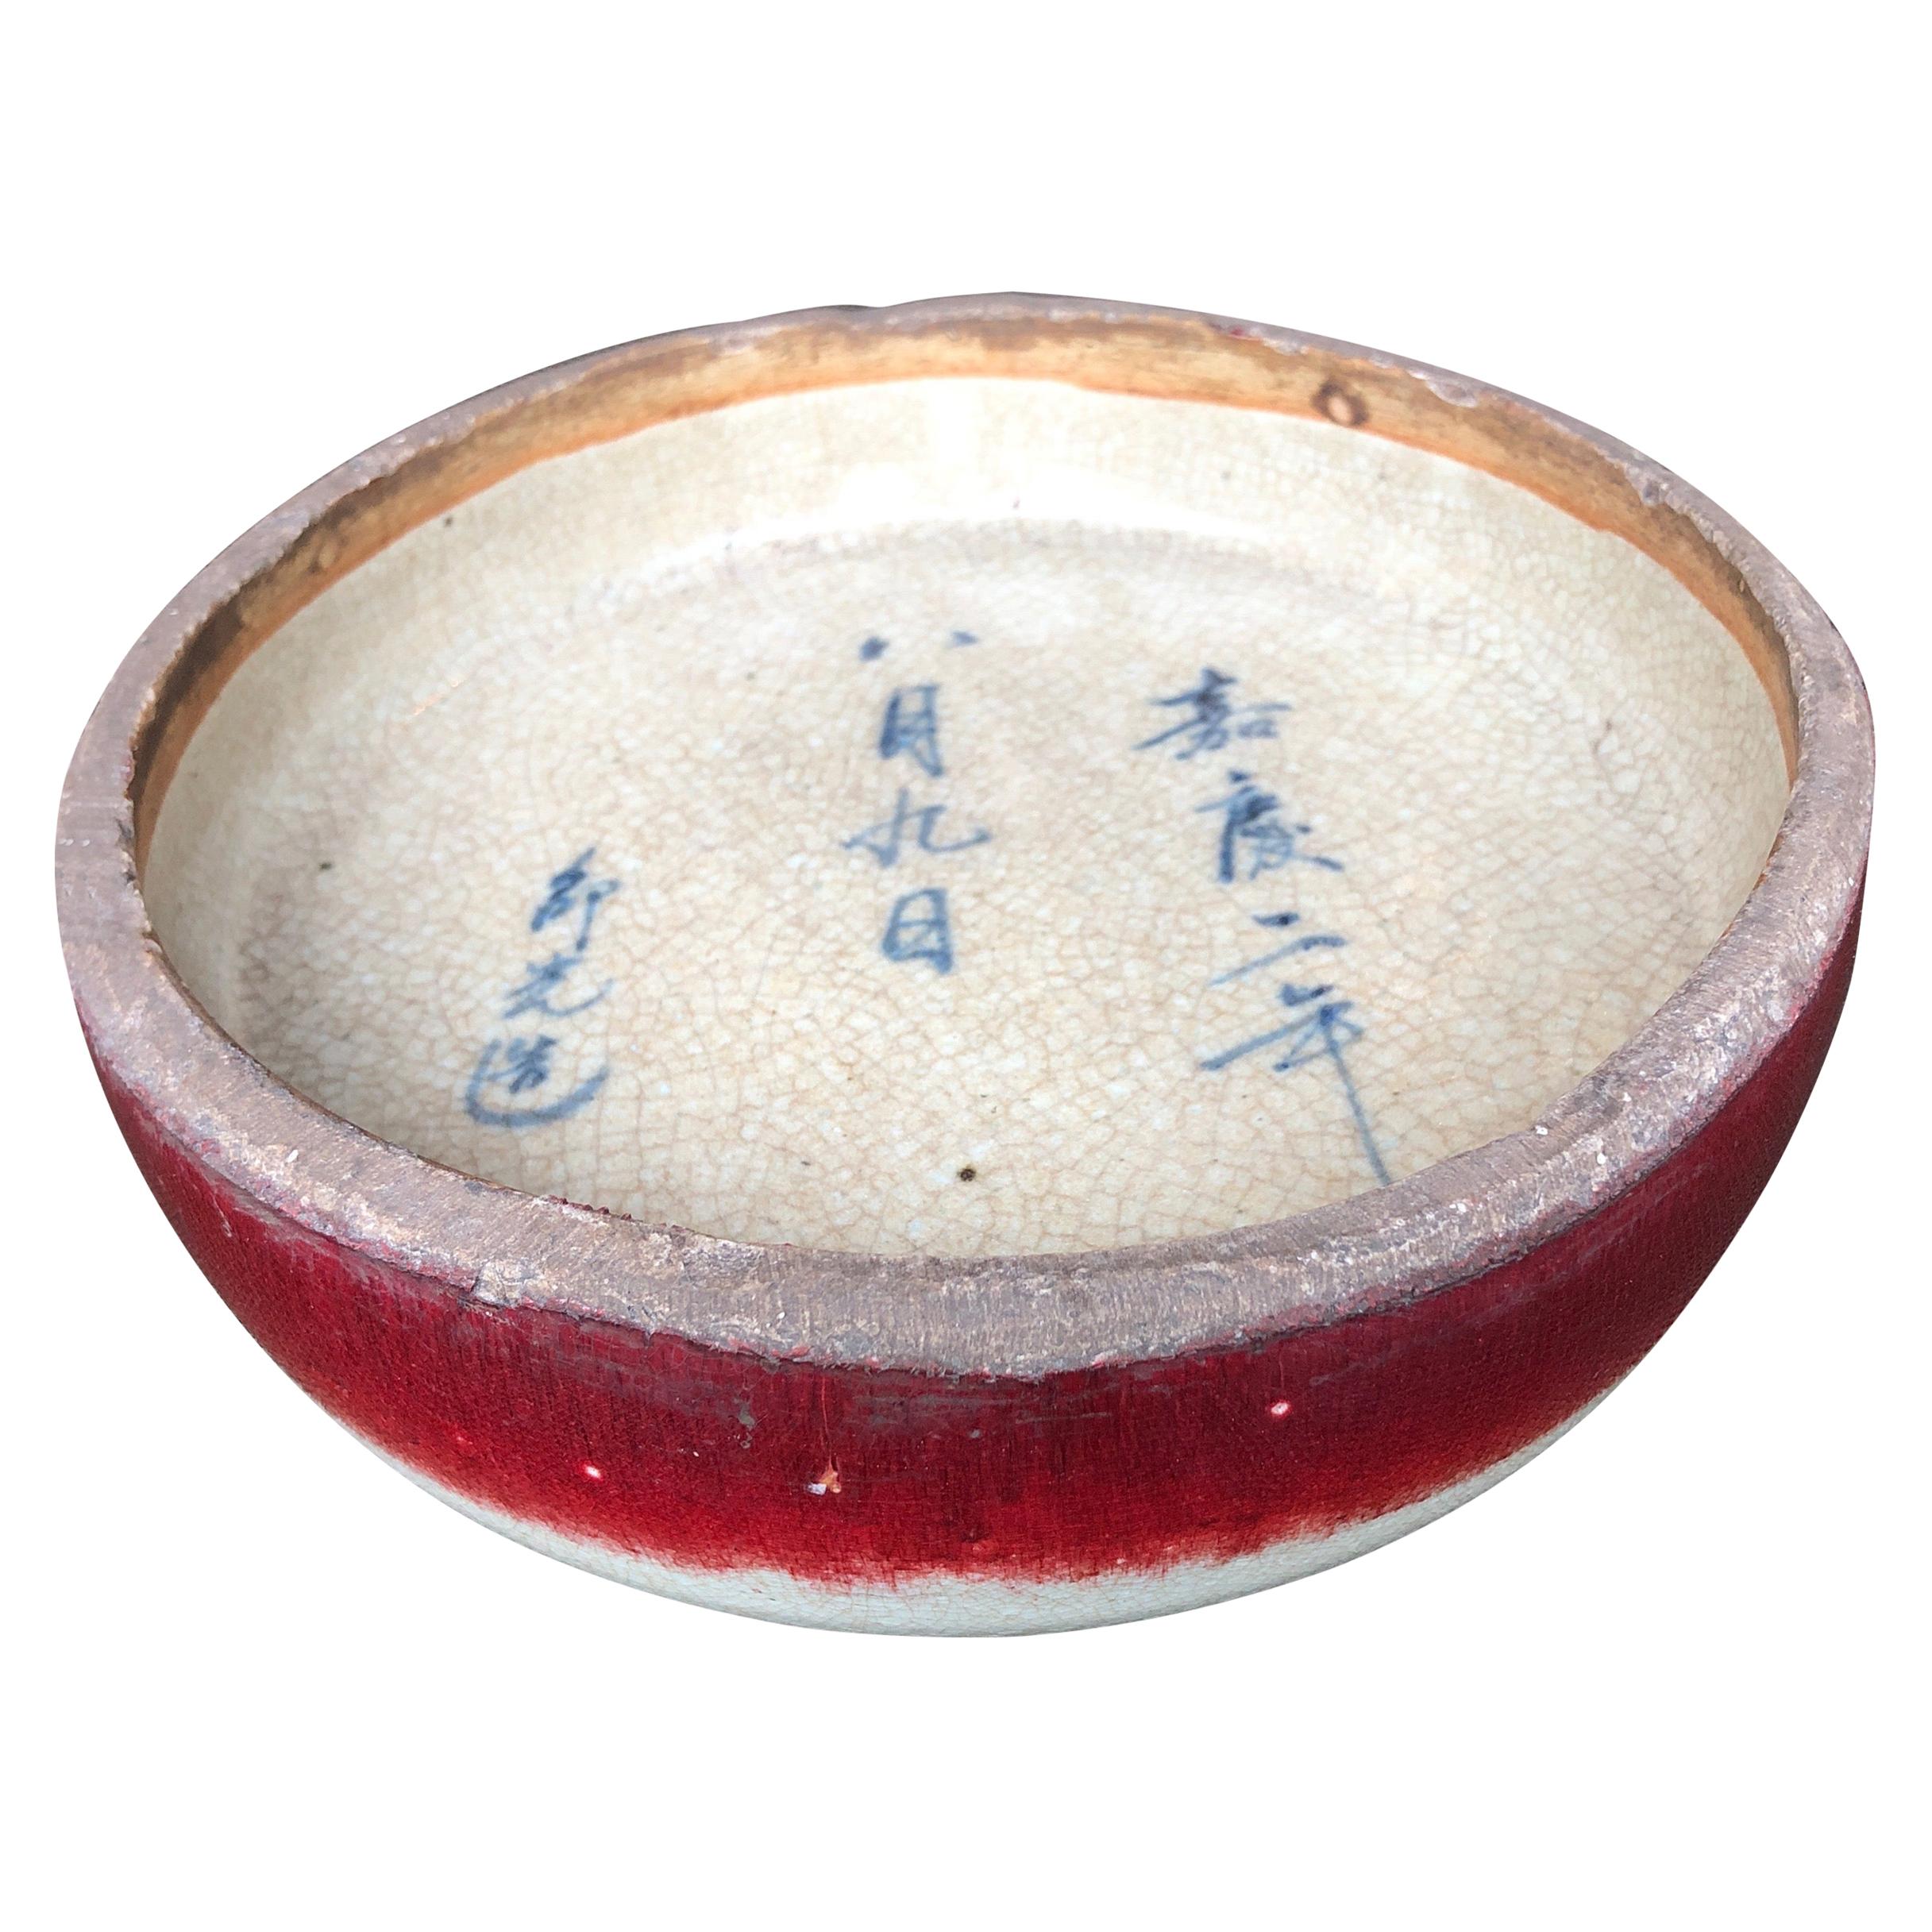 Antike Keramik-Bürstenwaschmaschine mit chinesischer Kalligrafie und auffälligem rotem Akzent